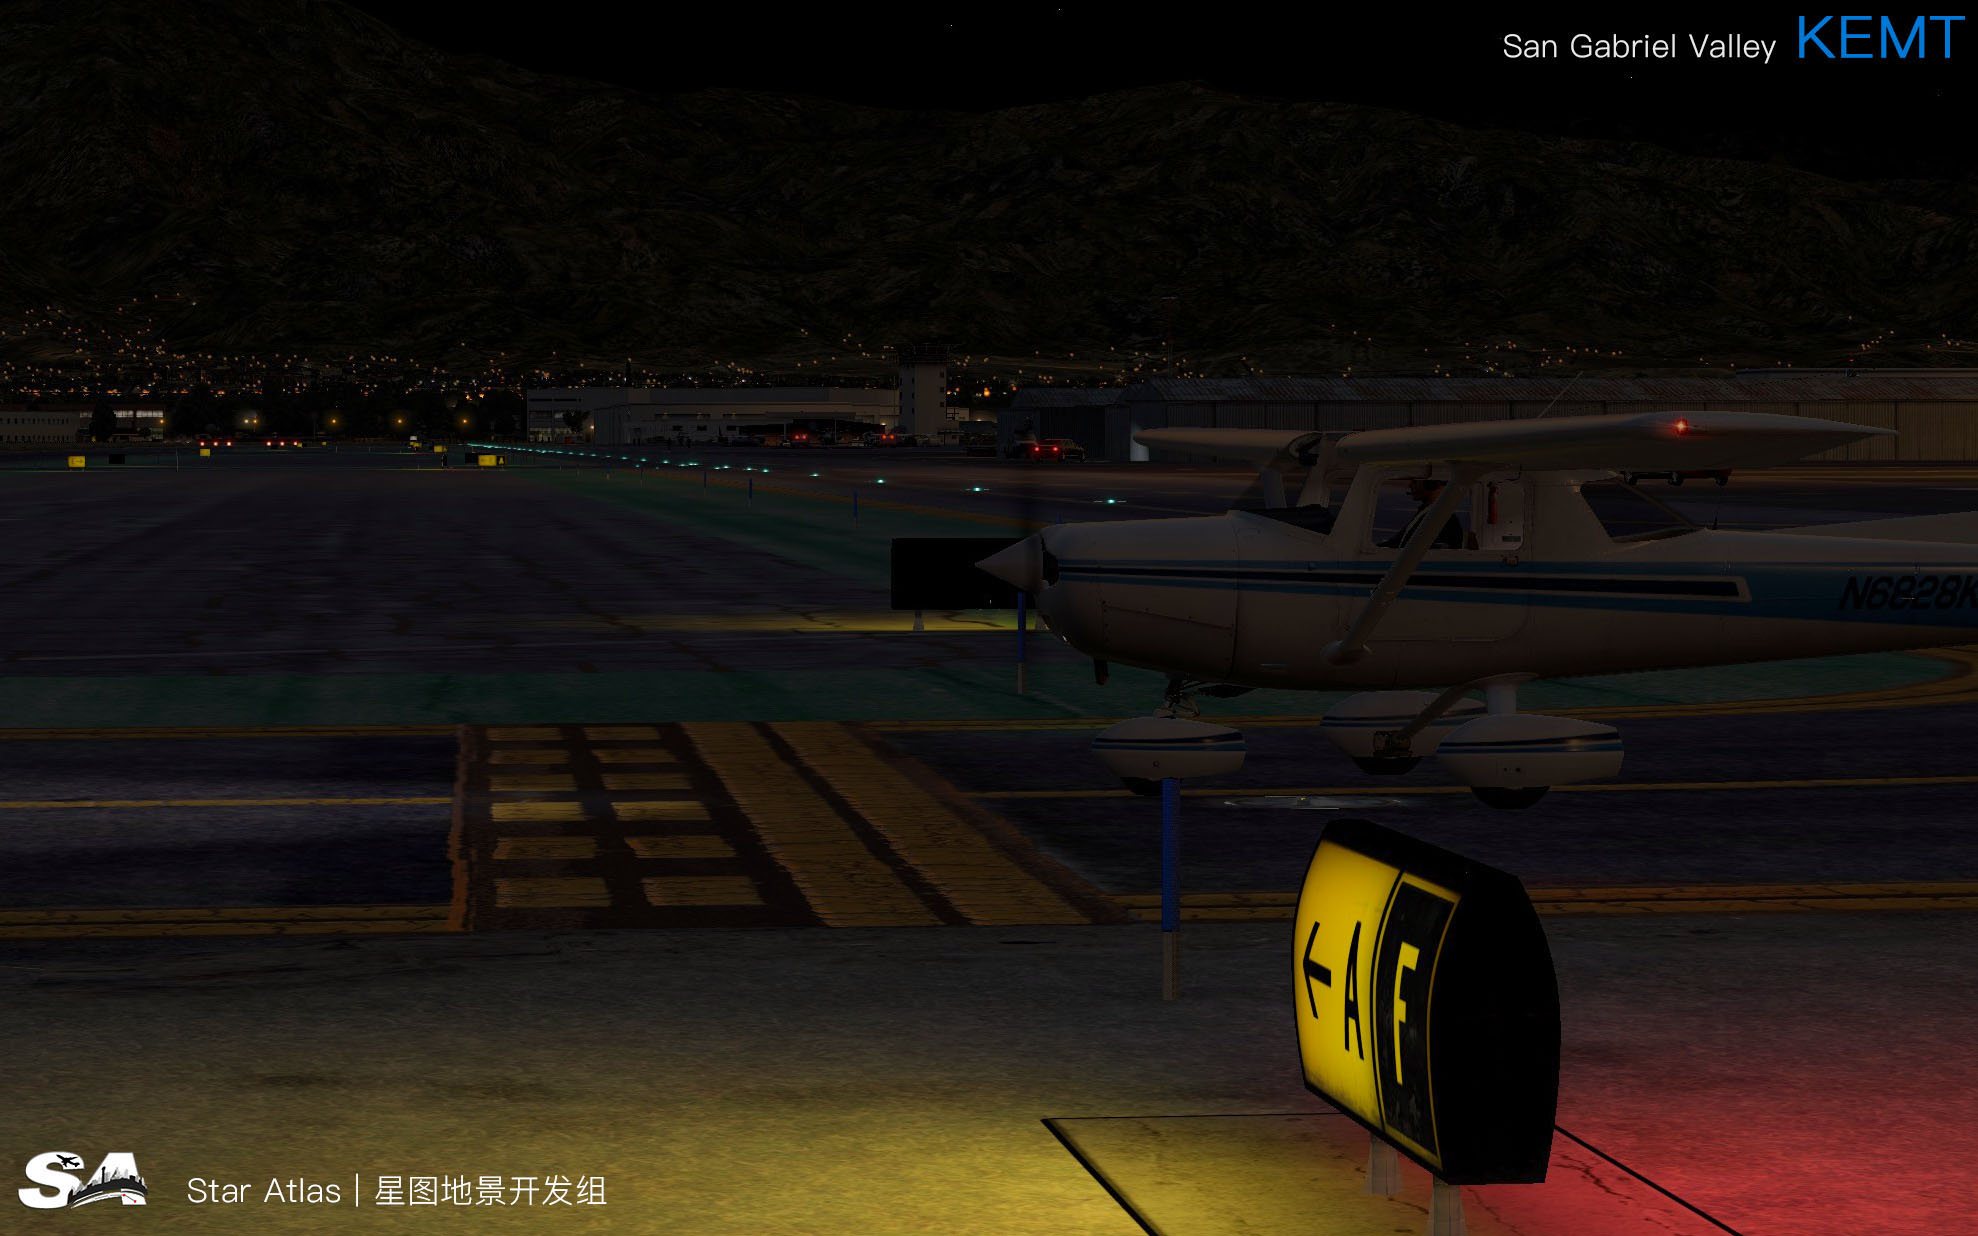 【X-Plane】KEMT-圣盖博谷机场 HD 1.0-8286 